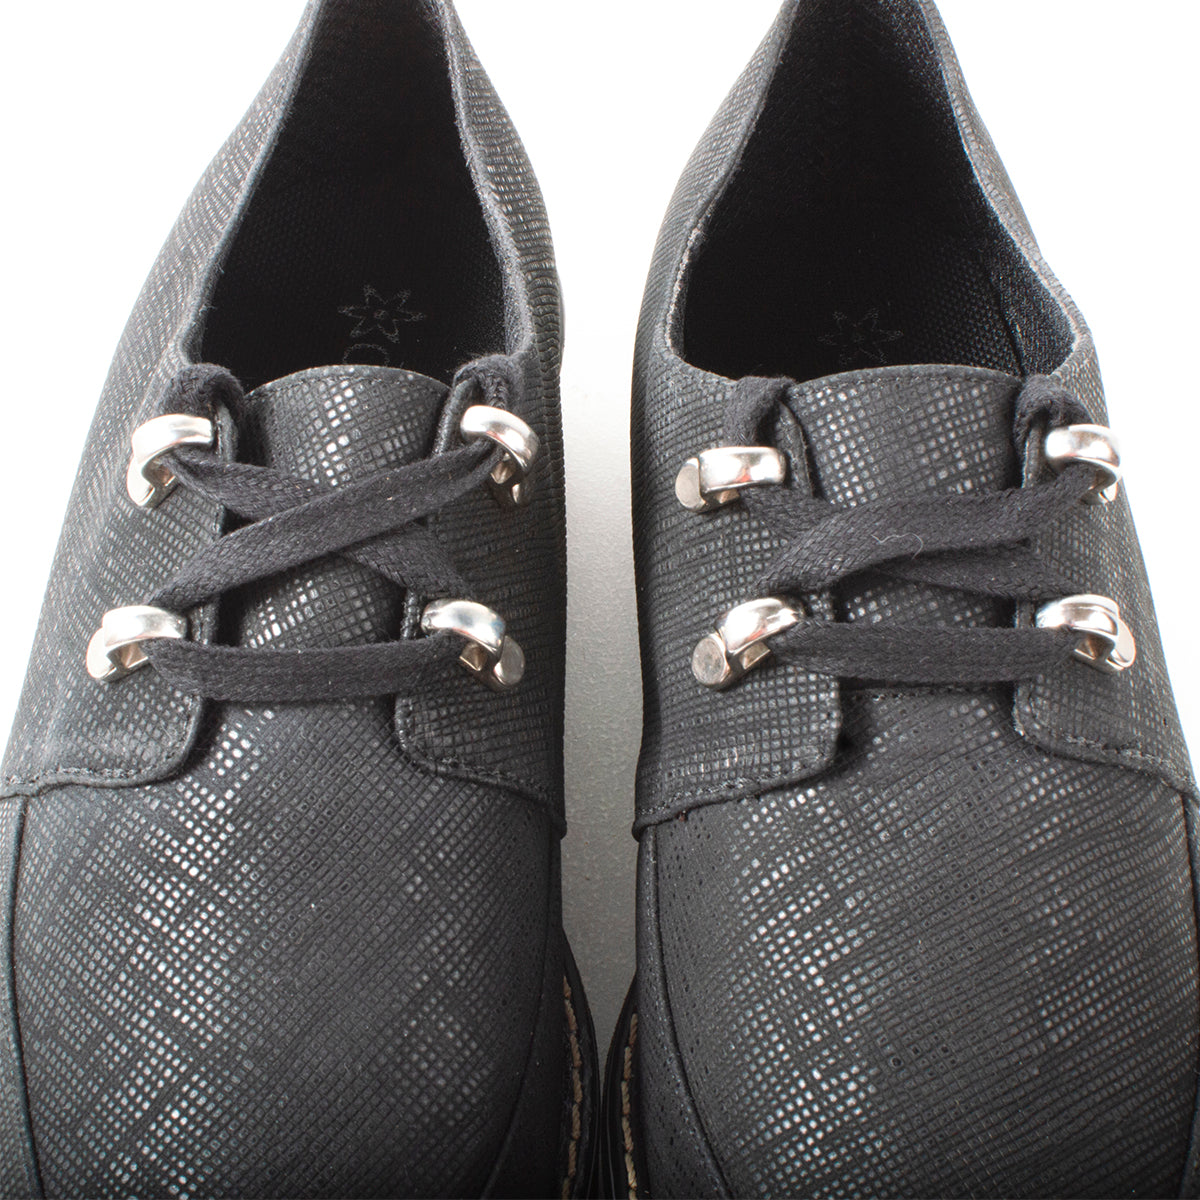 Zapato oxford de cuero color negro con apliques plateados, para dama